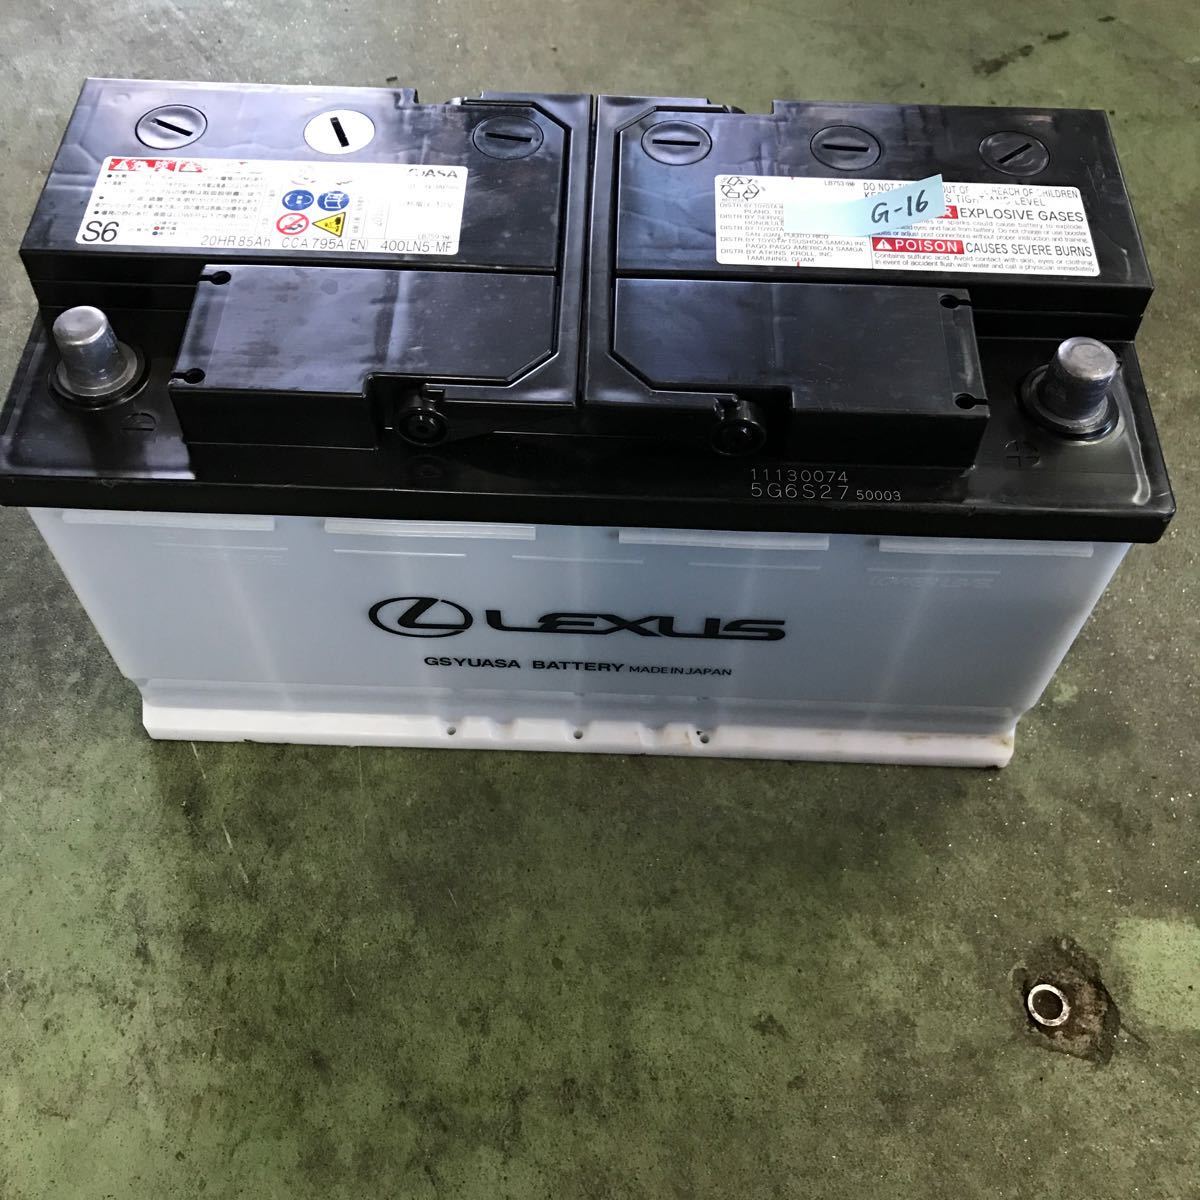 [G-16]GS YUASA Lexus car battery 400LN5-MF GS Yuasa free shipping 